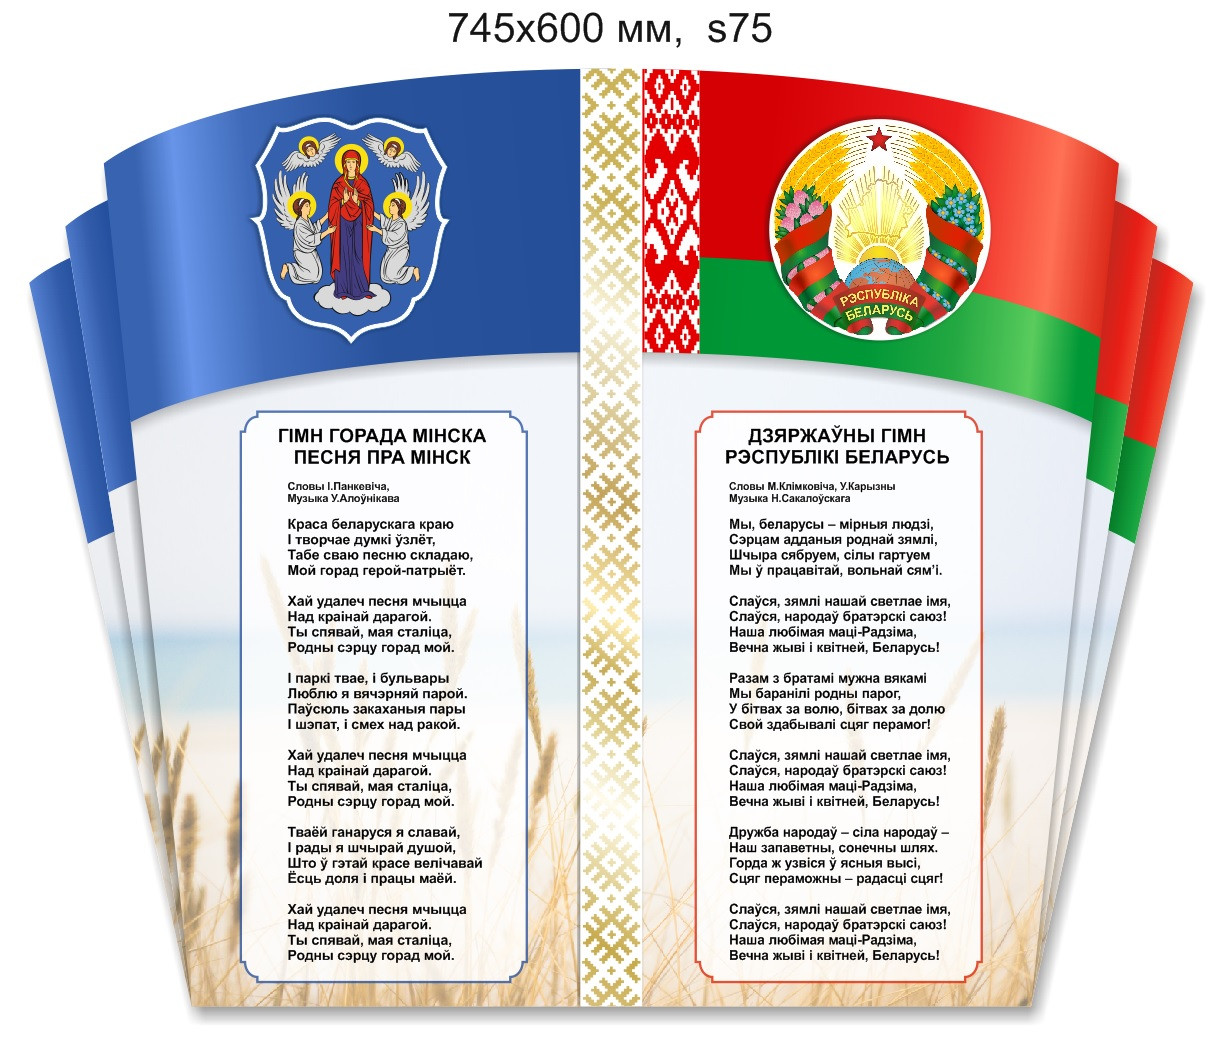 Стенд с символикой и гимнами Беларуси и г.Минска (745х600 мм)